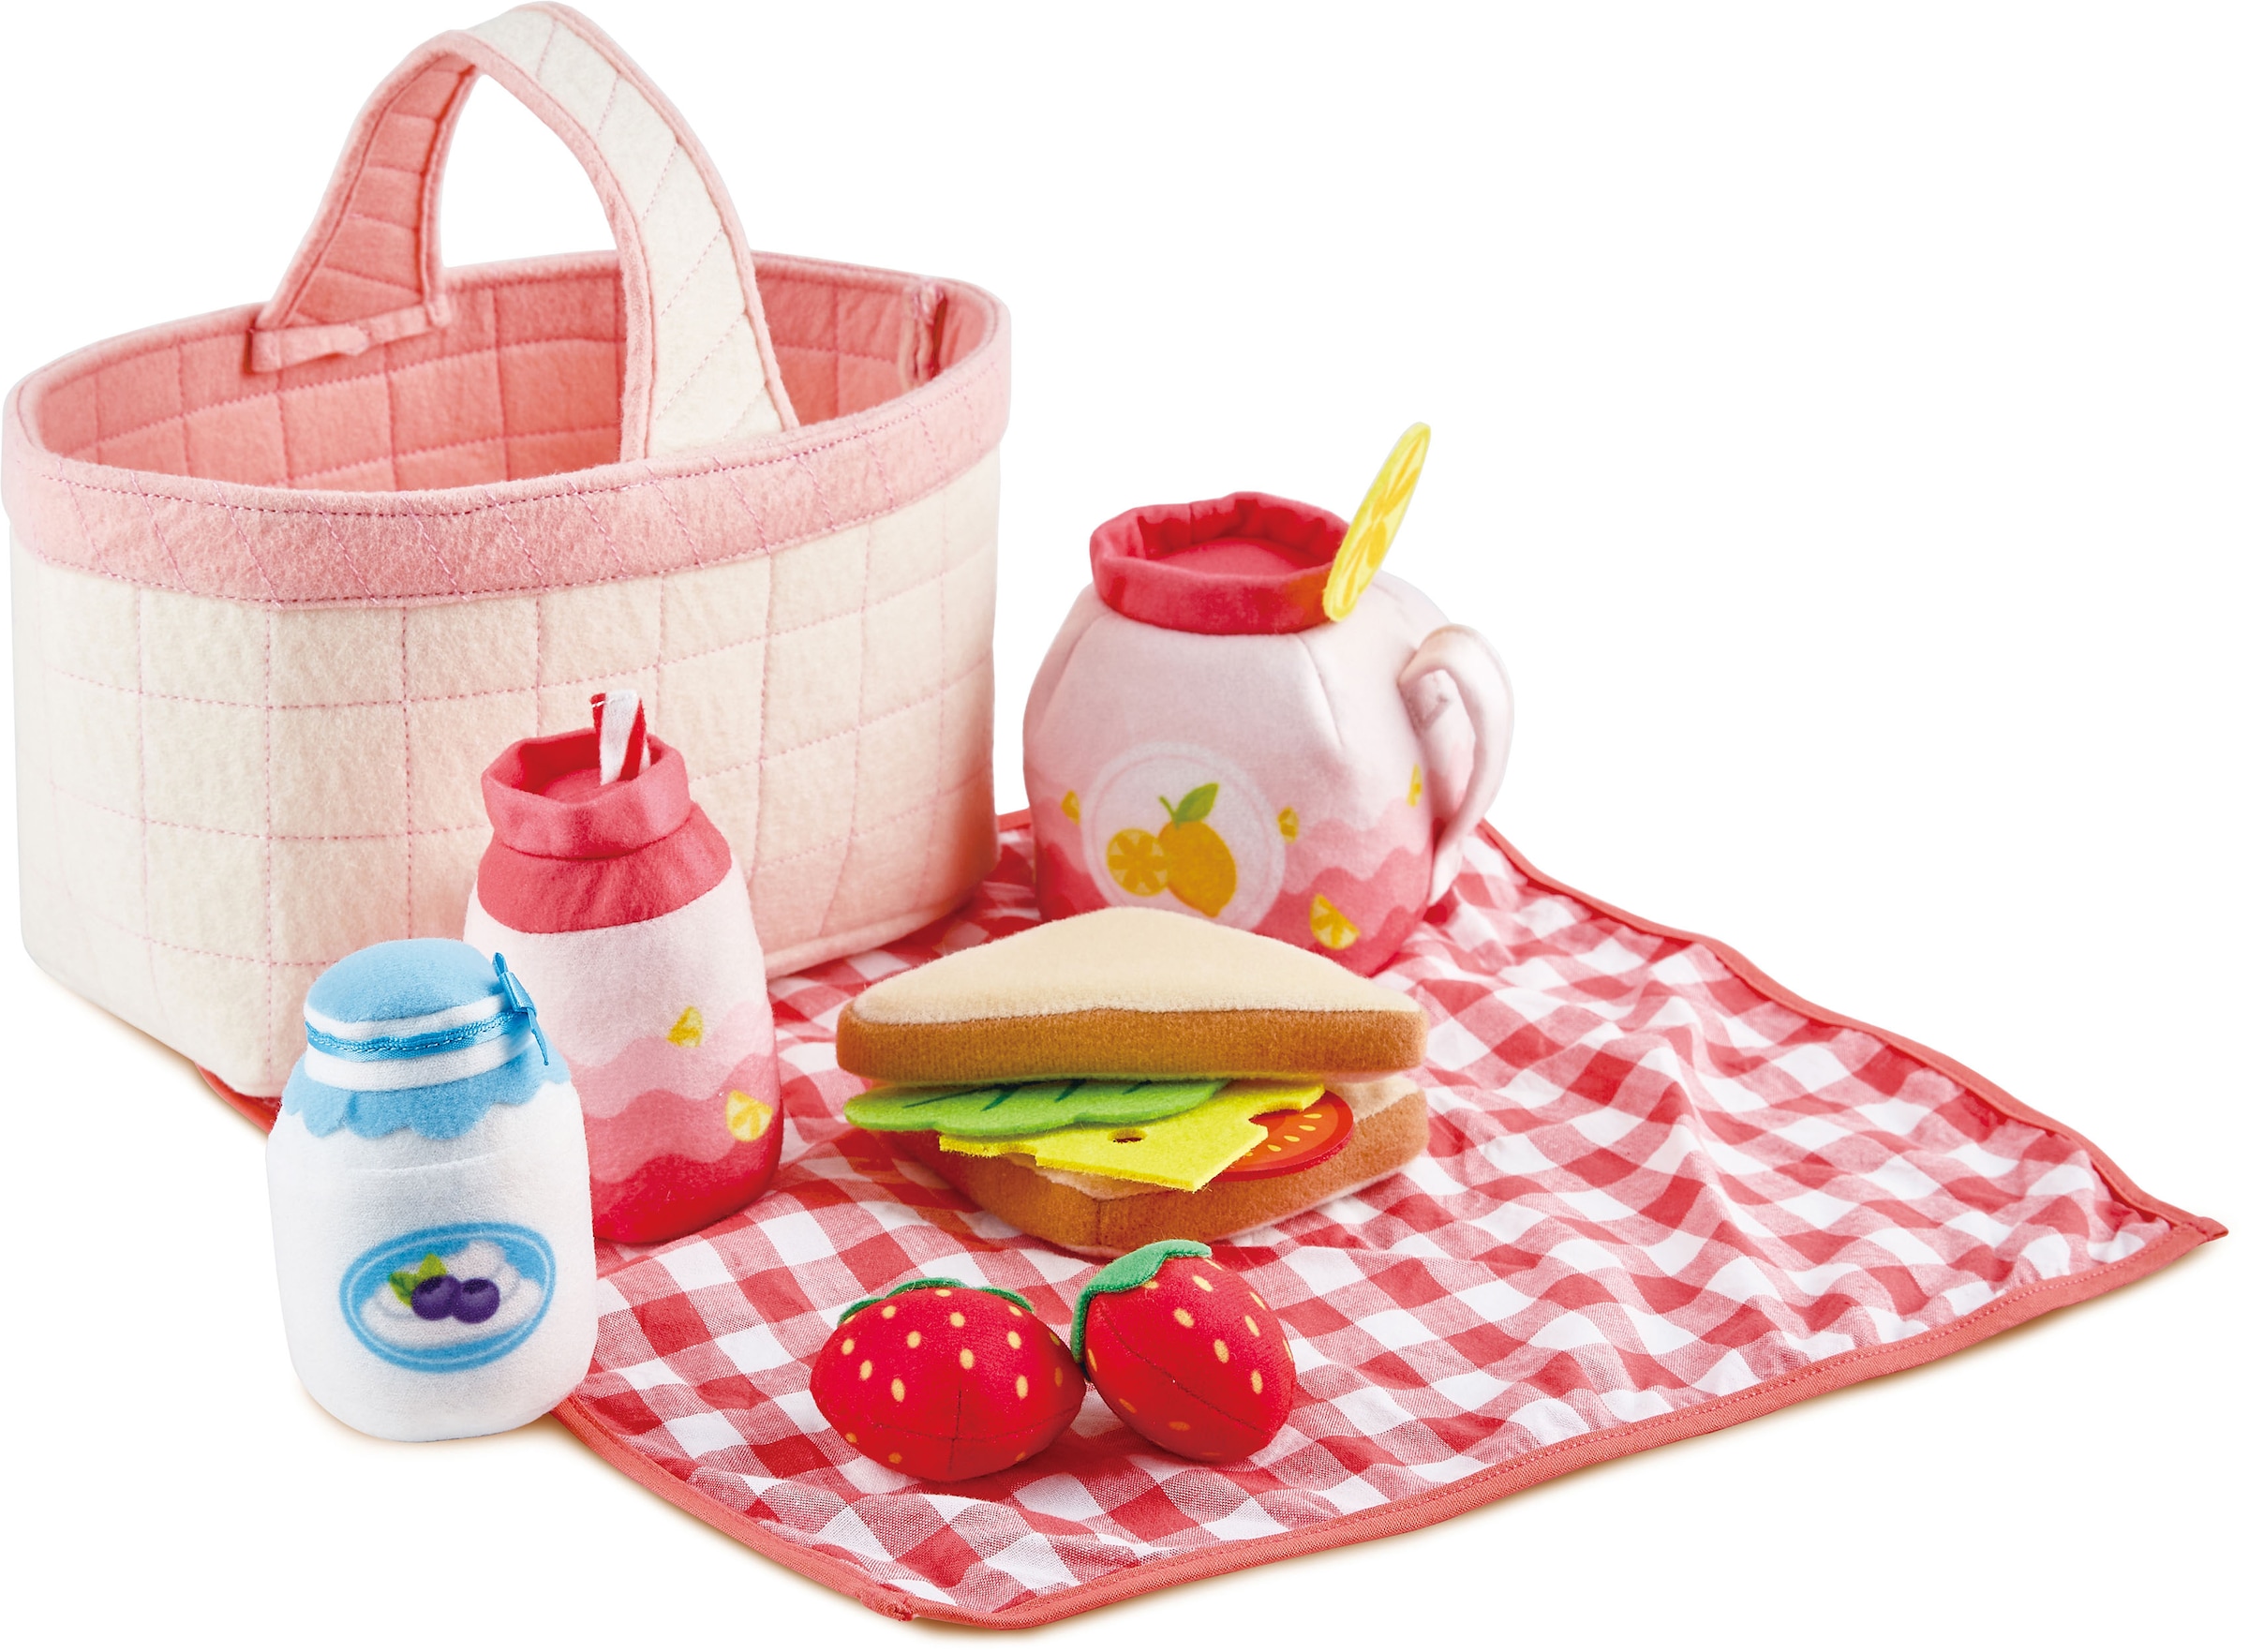 Spiellebensmittel »Picknick-Korb«, mit Picknickzubehör